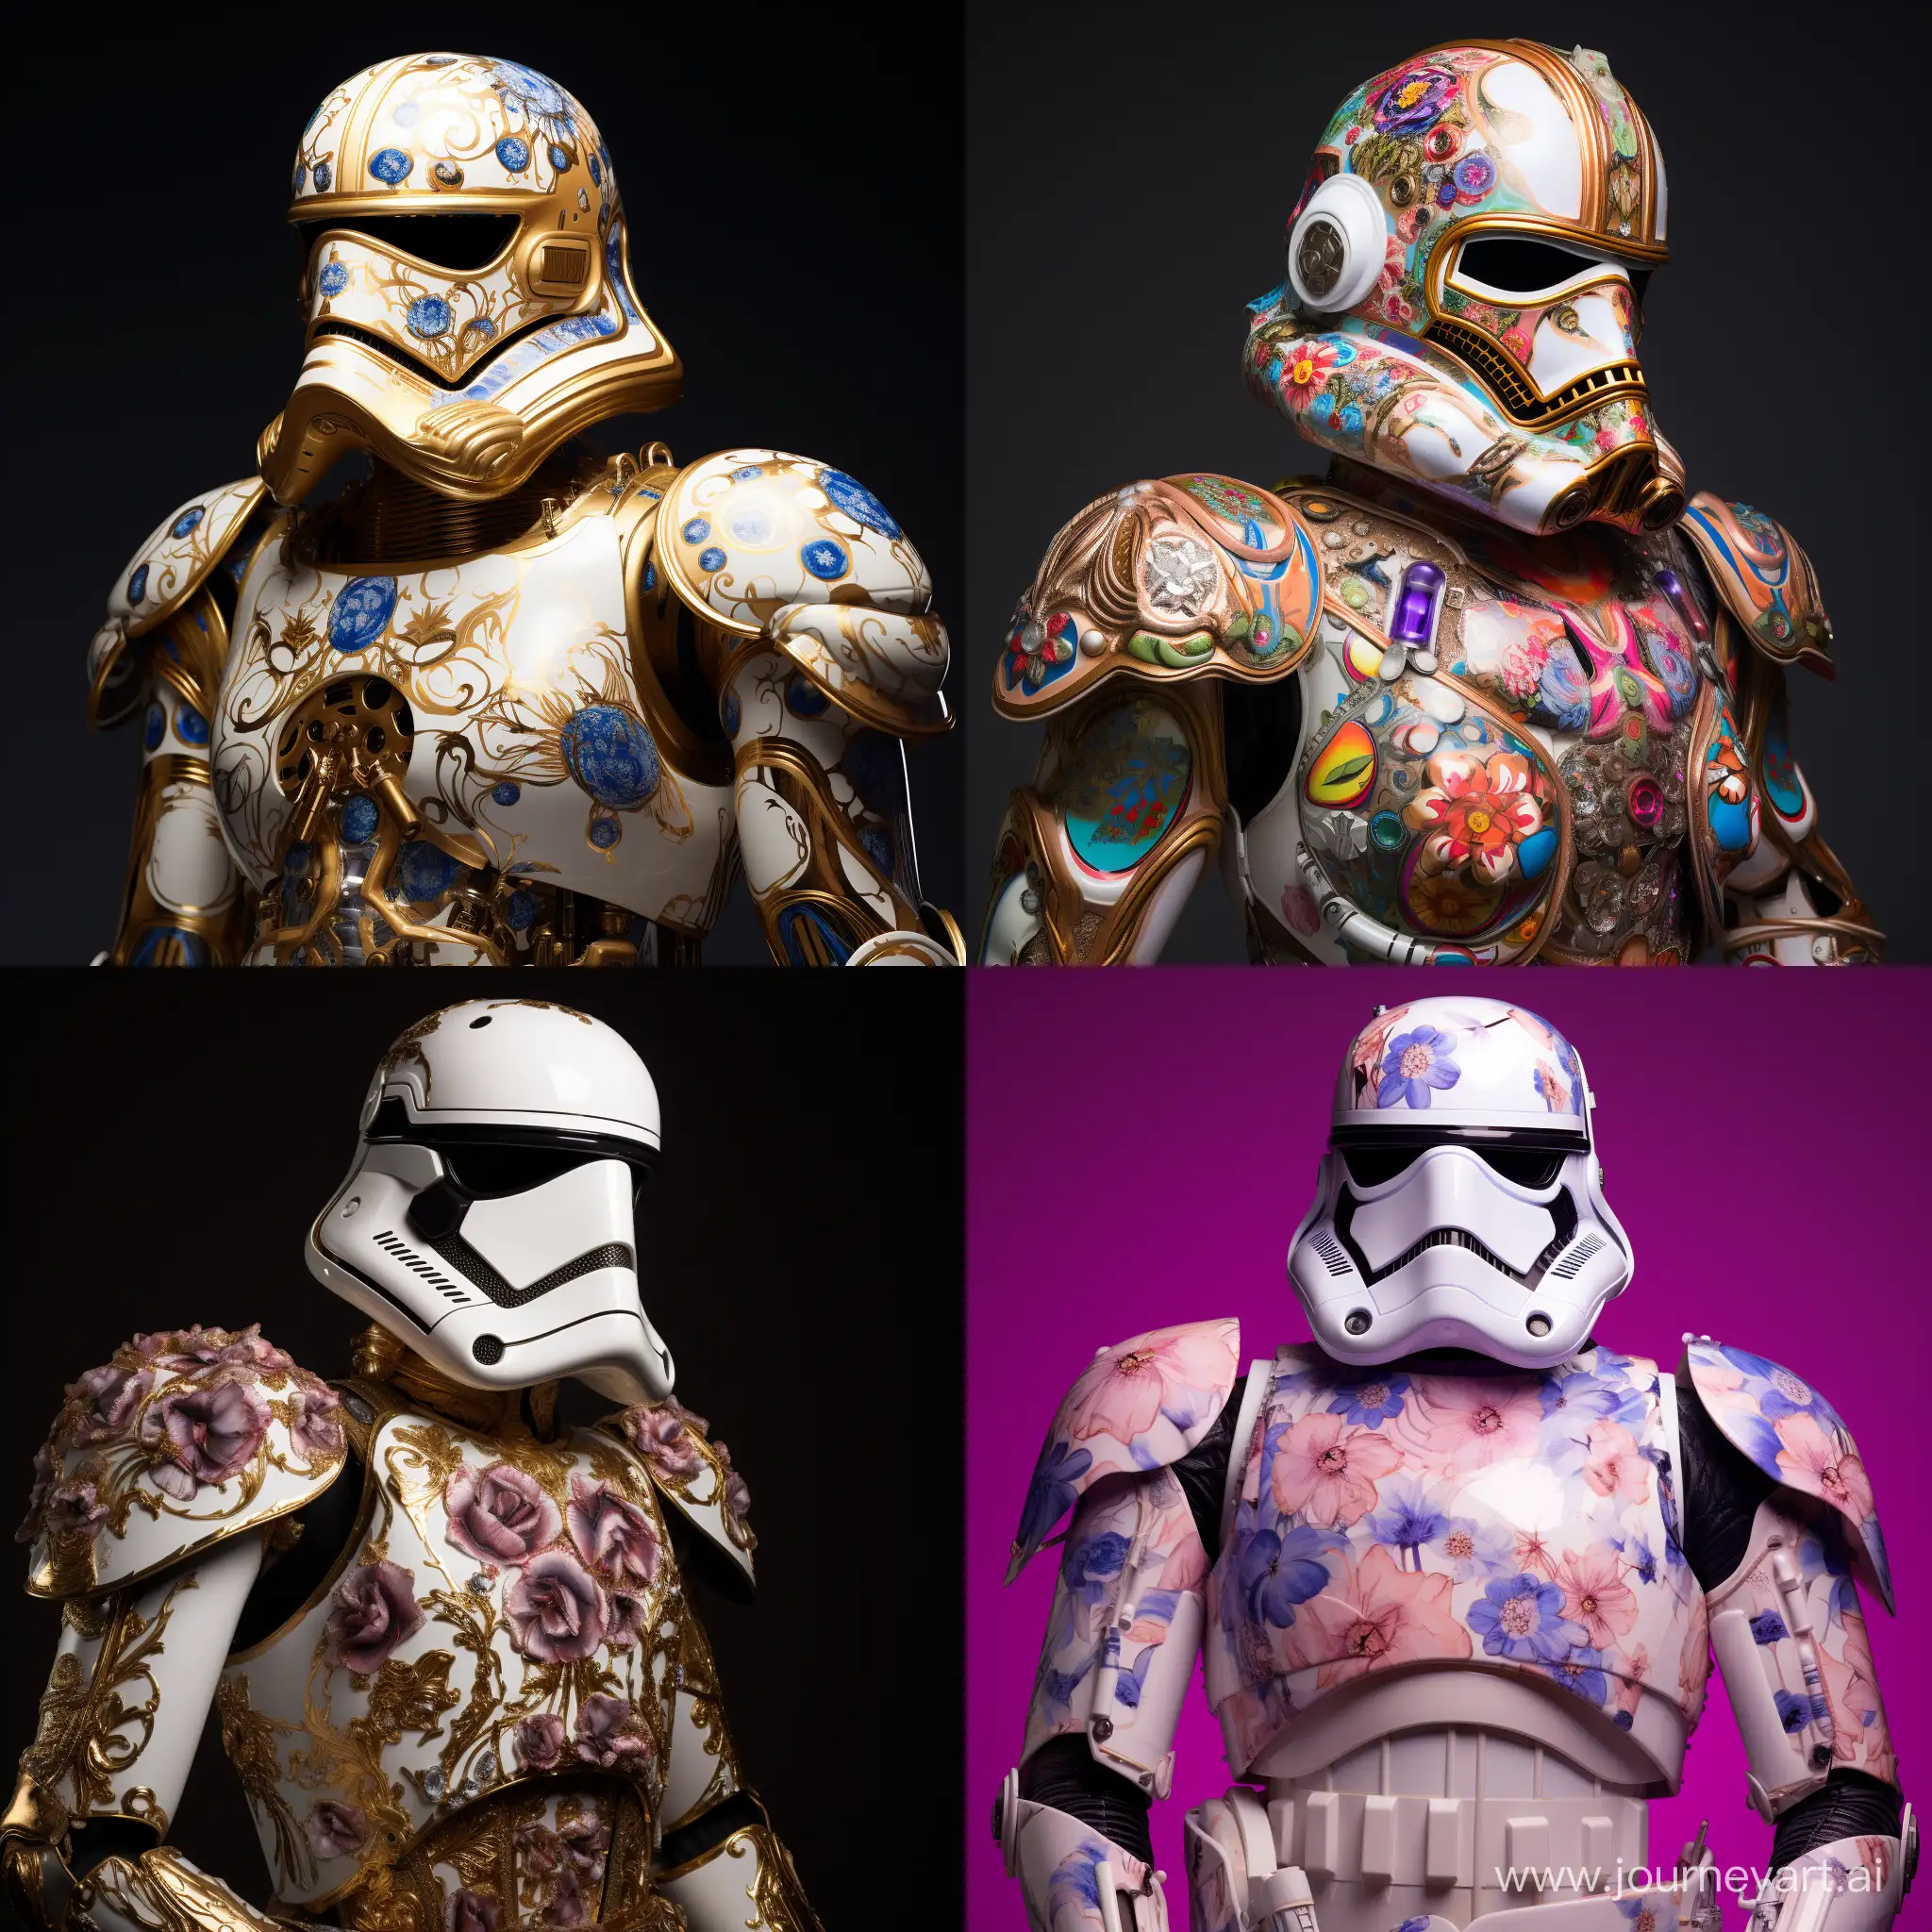 Star Wars Stormtrooper suit created by James Bidgood